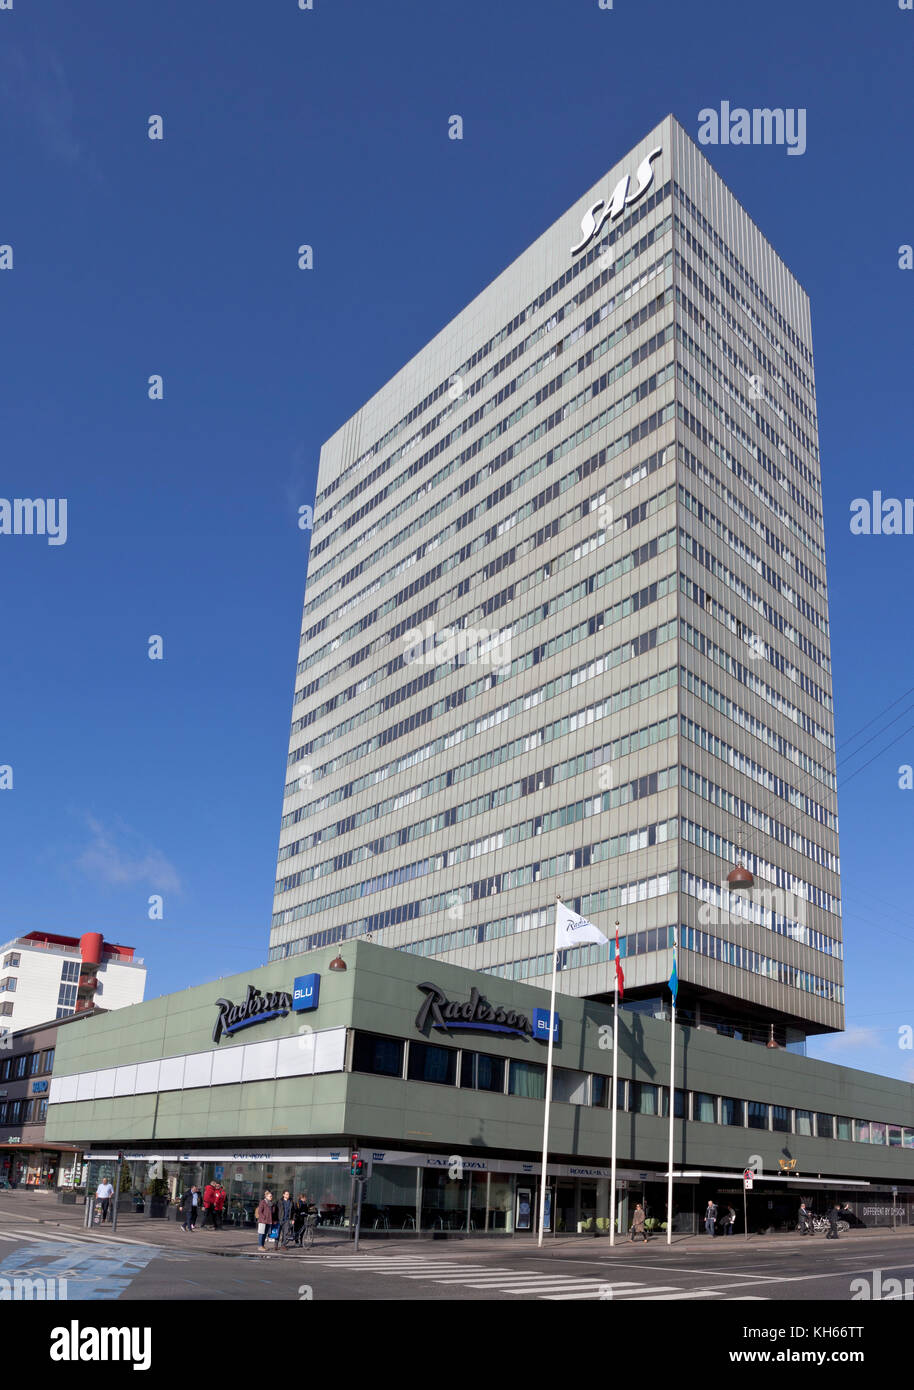 Das Radisson Blu Royal Hotel, oder auch nur das SAS Hotel, in der Vesterbrogade in Kopenhagen, Dänemark. Architekt Arne Jacobsen - Architektur. Stockfoto